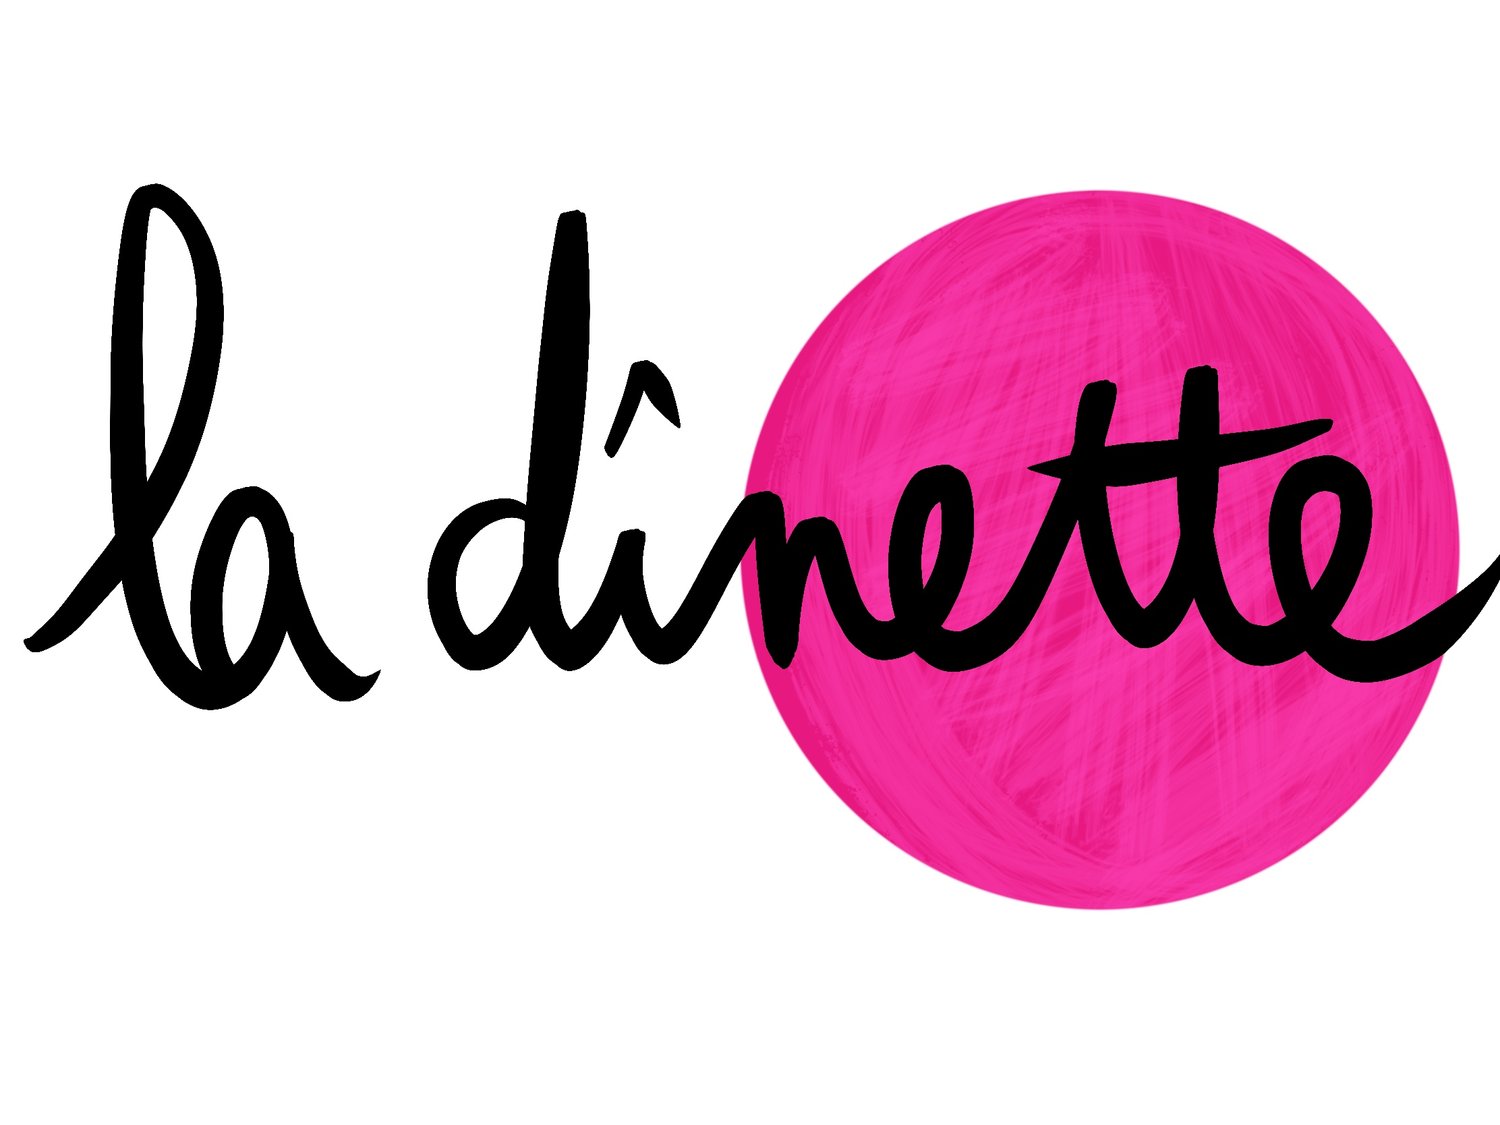 La Dinette